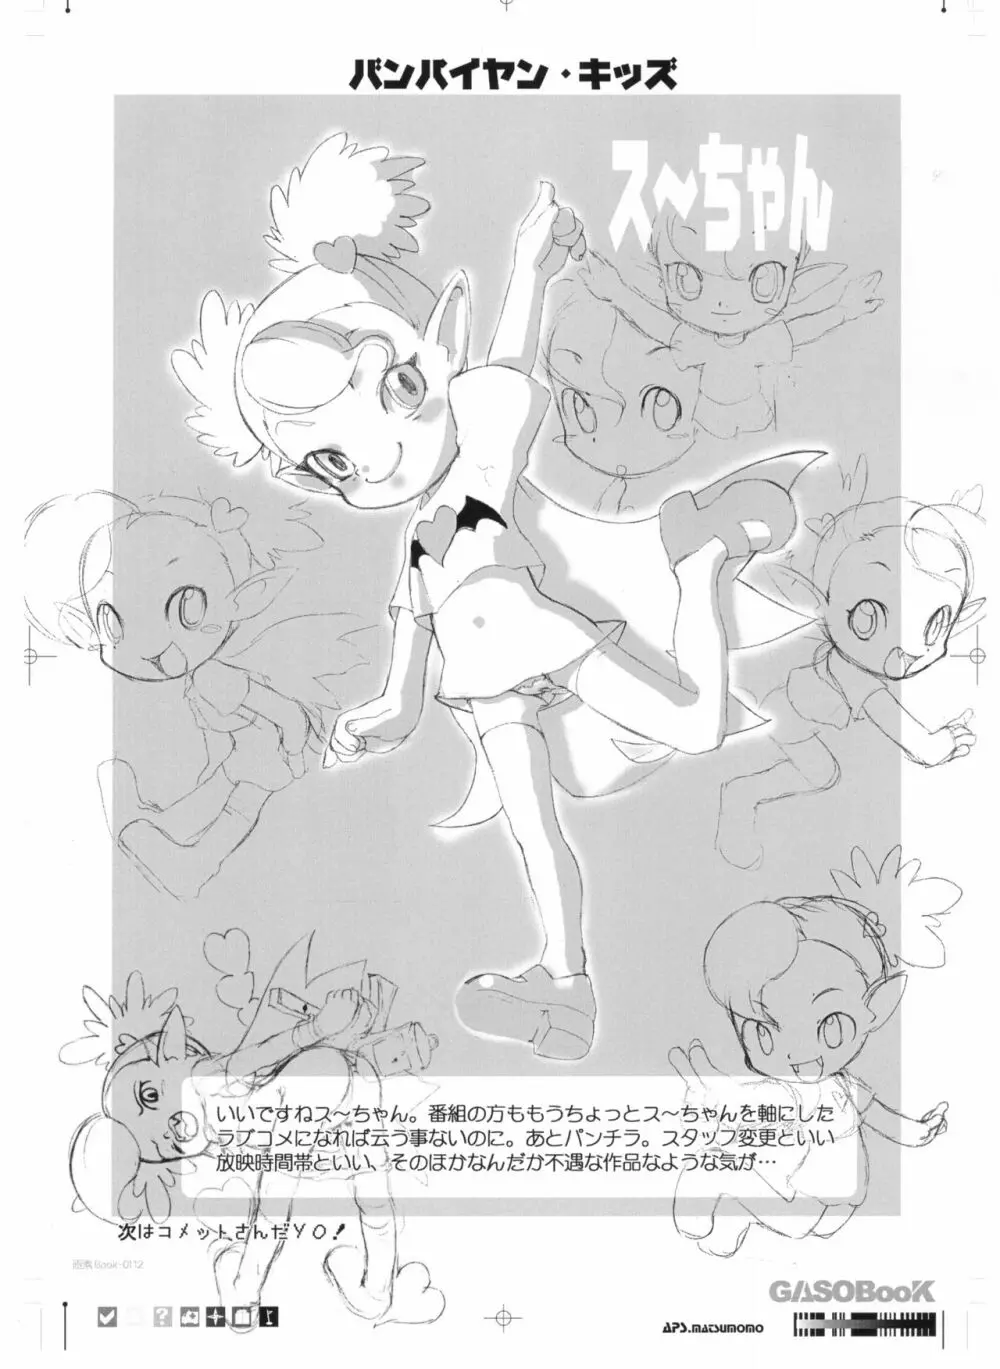 画素BooK 原稿用紙 キッズアニメトロニカ -0112 14ページ